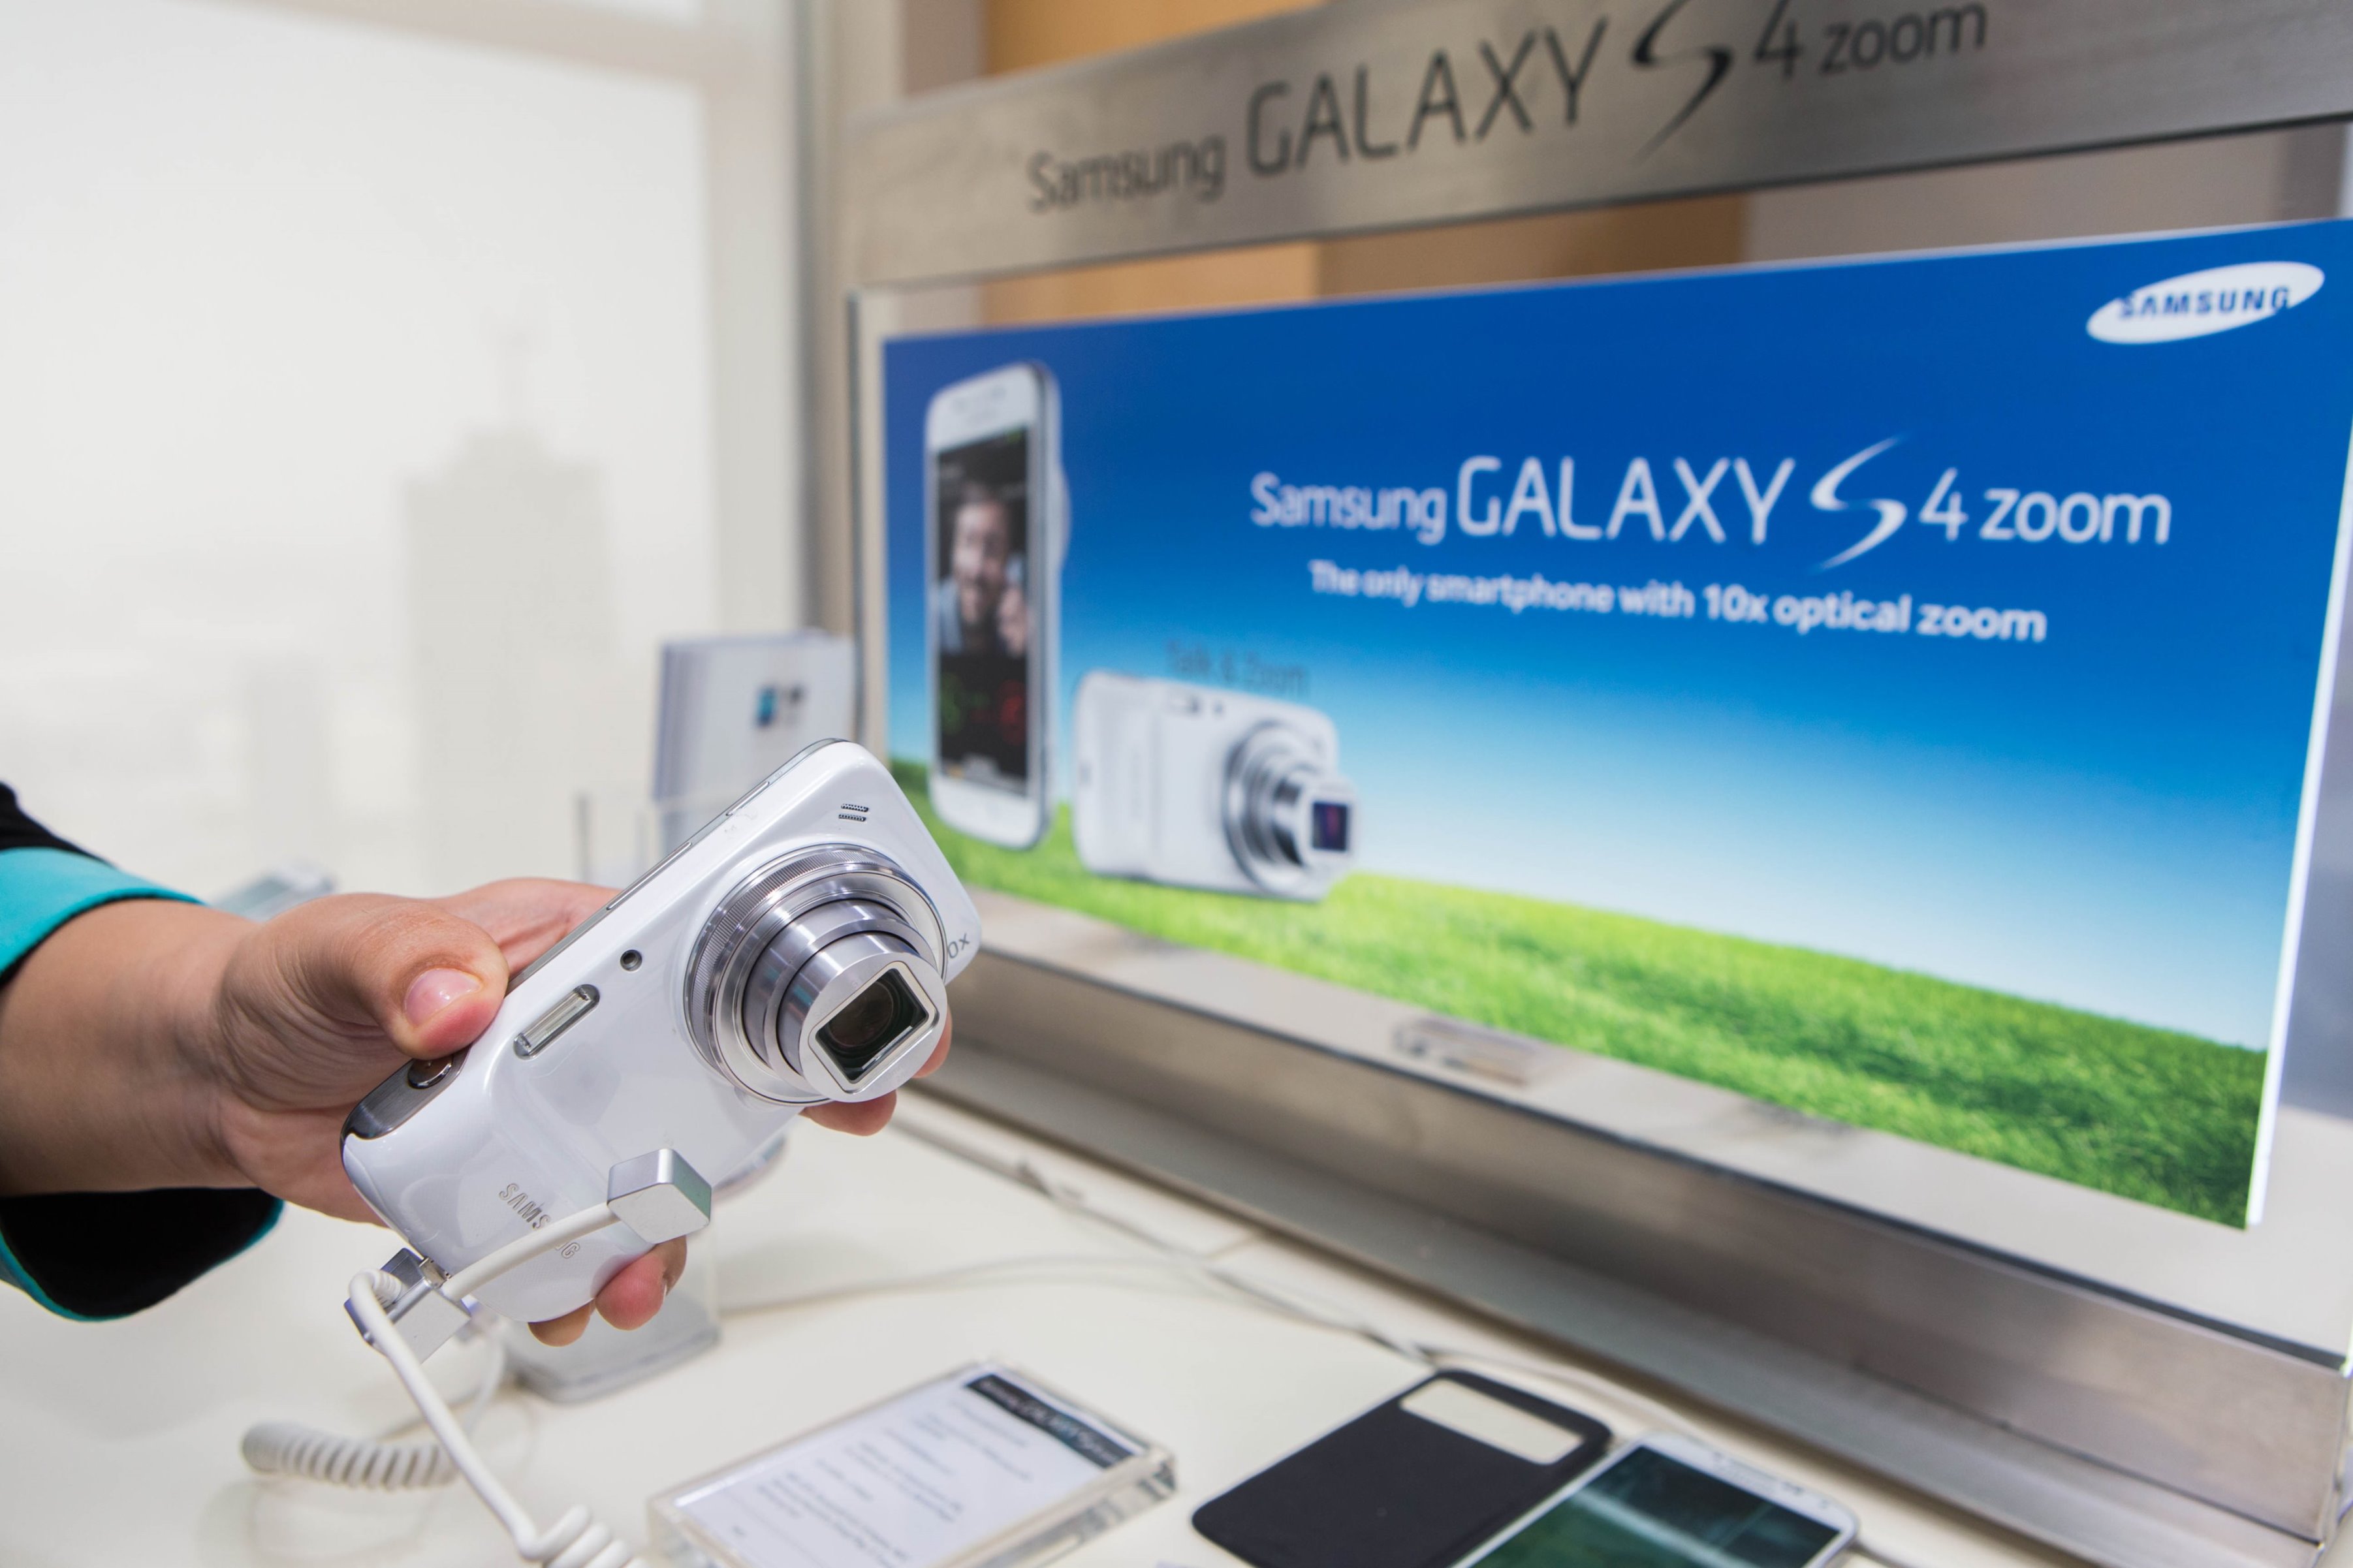 سامسونج تطلق هاتفها الذكي "جالكسي إس 4 زوم" الإمارات | البوابة العربية التقنية